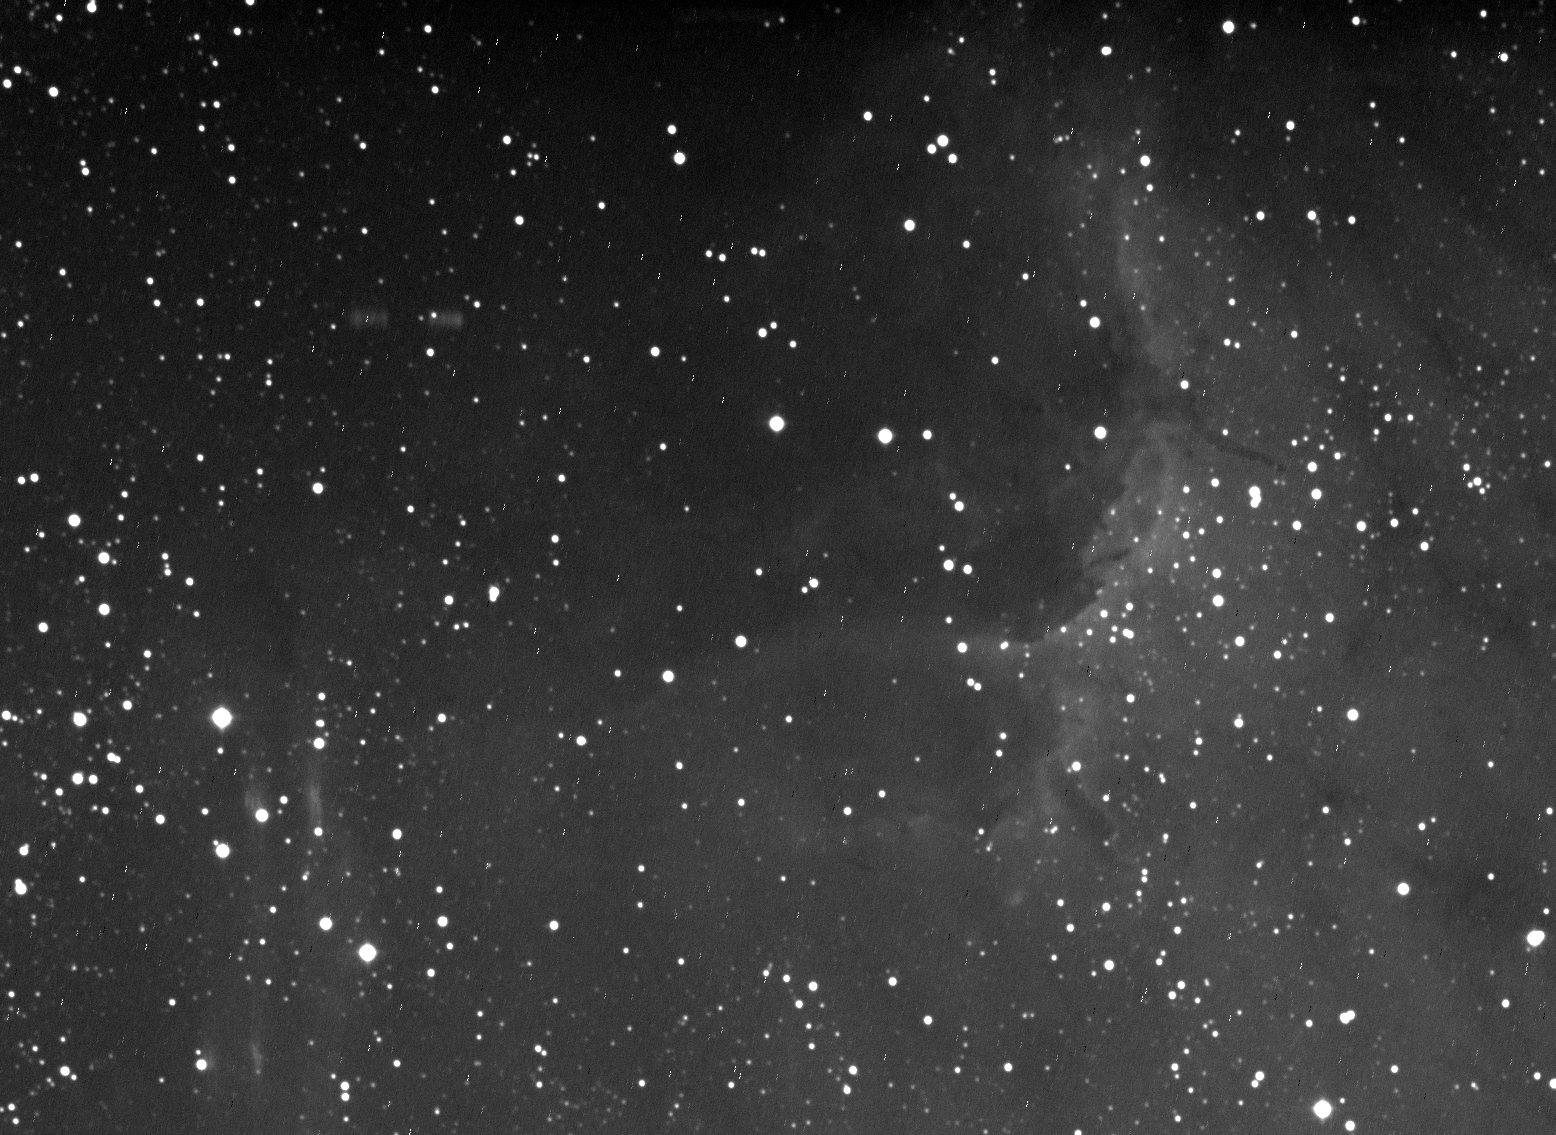 Le résultat de la nuit d'observation : une photo en noir et blanc de la nébuleuse du Pélican.